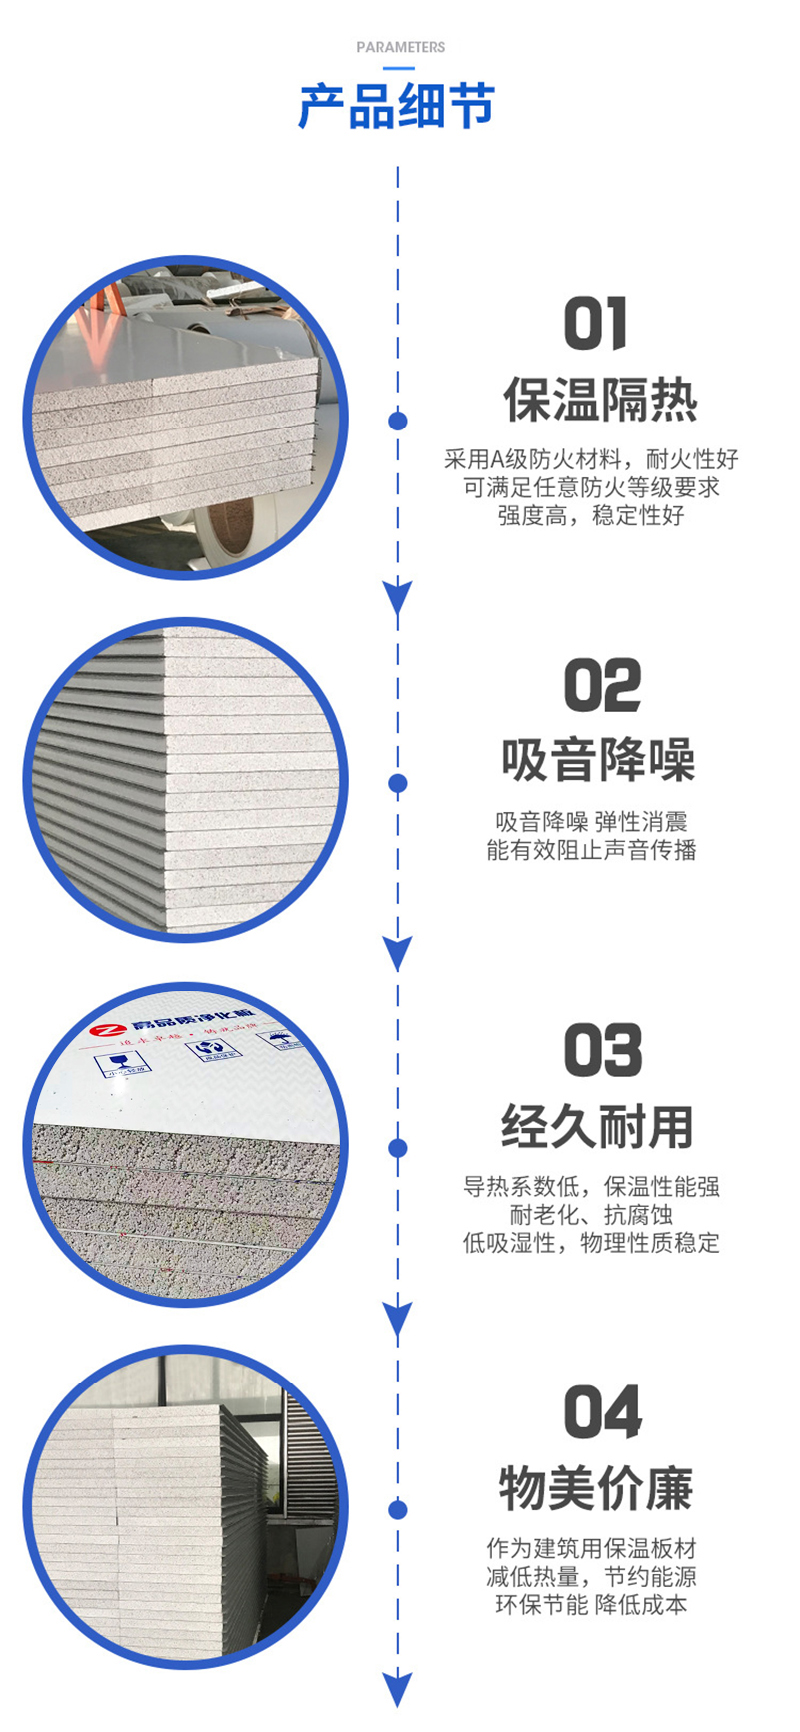 岩棉玻镁夹芯板,【乐鱼官网】中国有限公司板材